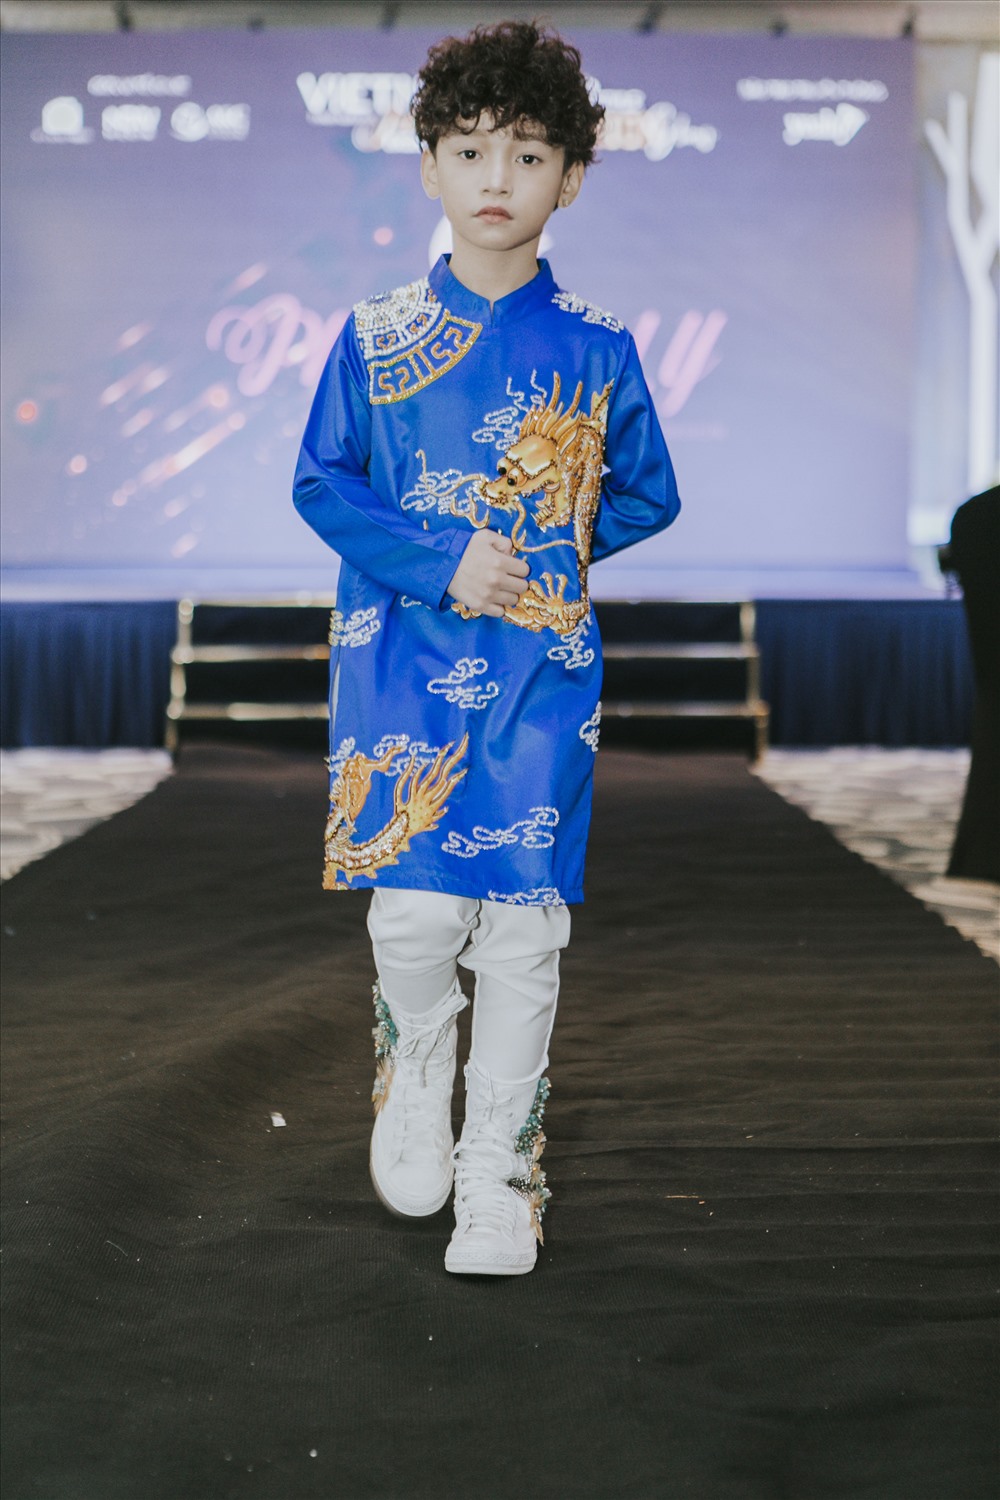 Tuần lễ thời trang trẻ em quốc tế Việt Nam 2018 không chỉ là điểm hẹn đặc biệt của những người đam mê thời trang mà con là một trong những hoạt động nhân ái hướng tới những giá trị vì cộng đồng.